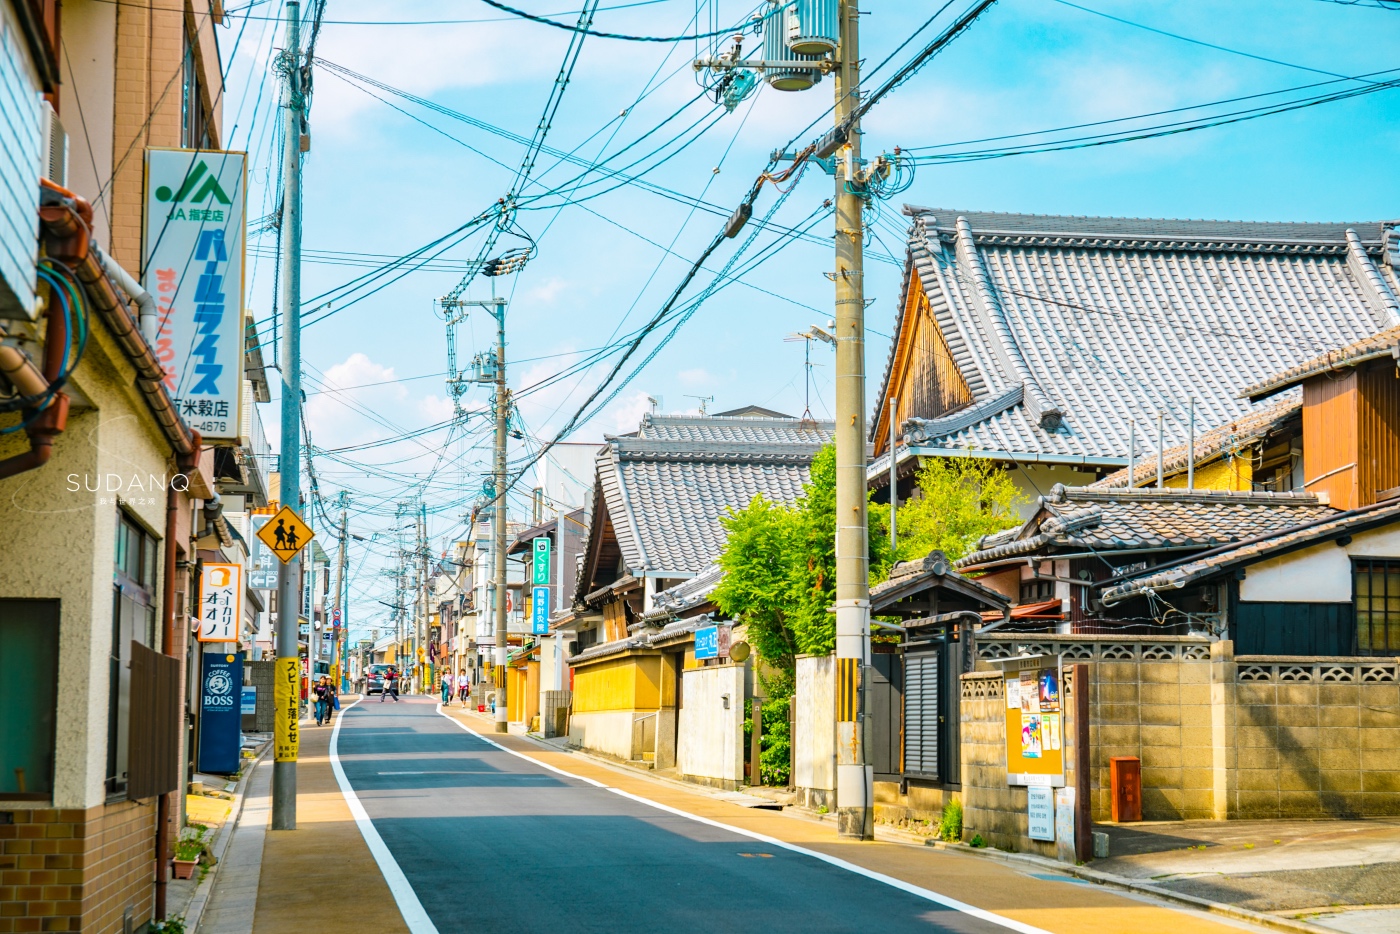 日本经济发达,为何街头都是电线杆?中国游客:穷